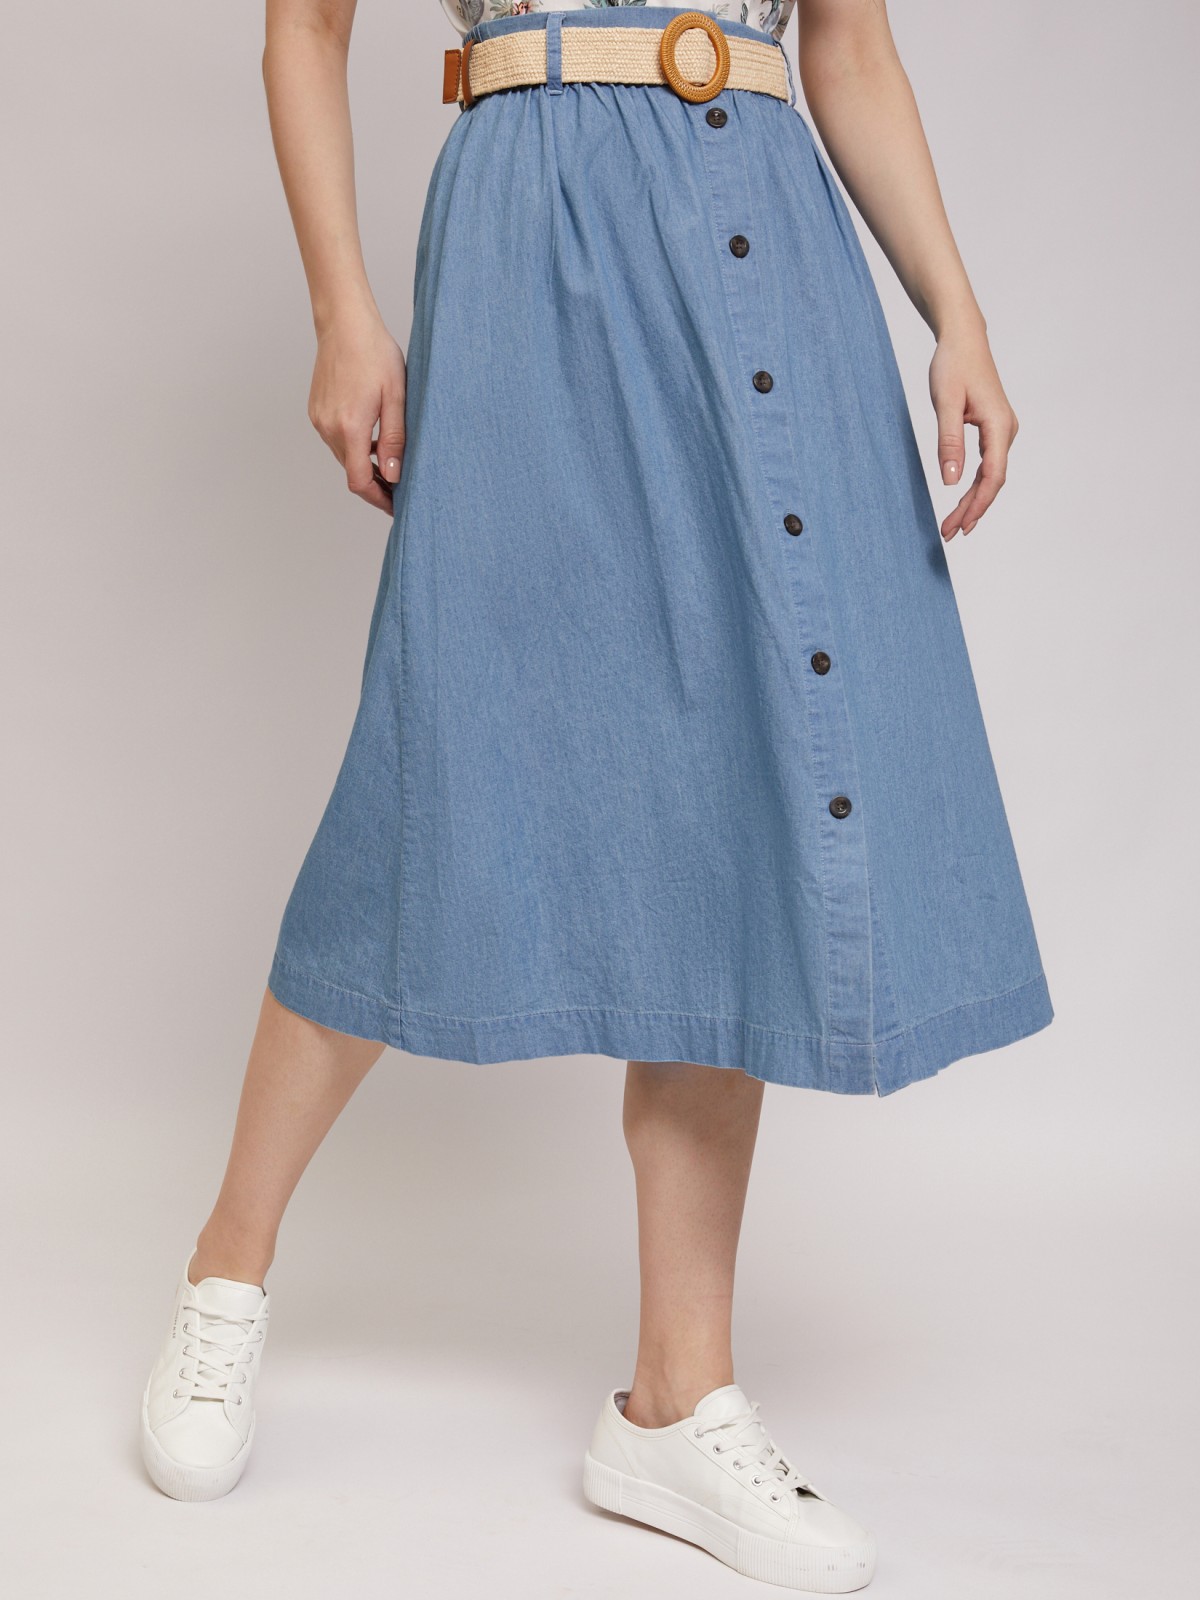 Хлопковая юбка миди zolla 02125787Y153, цвет светло-голубой, размер XS - фото 3